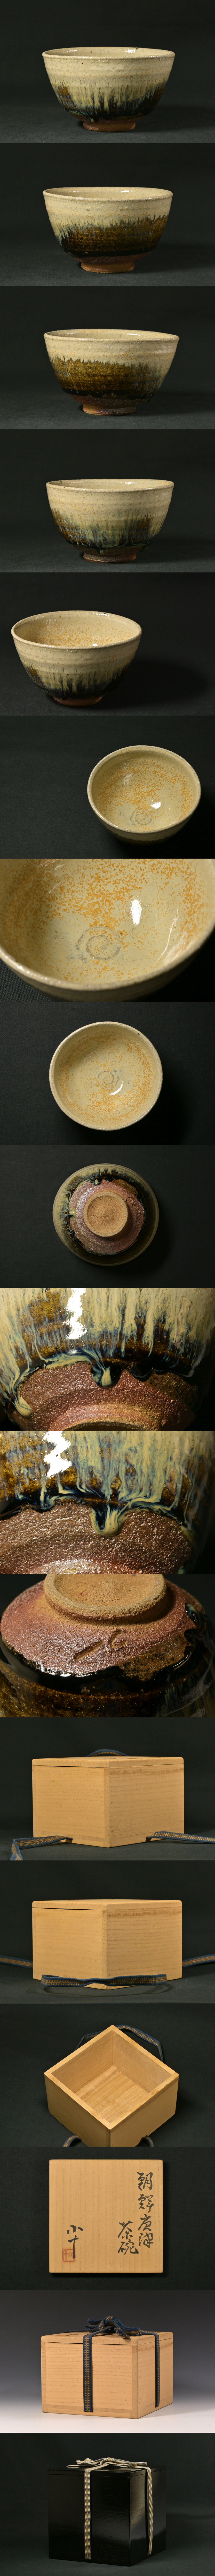 西岡小十の朝鮮唐津茶碗、詳細写真